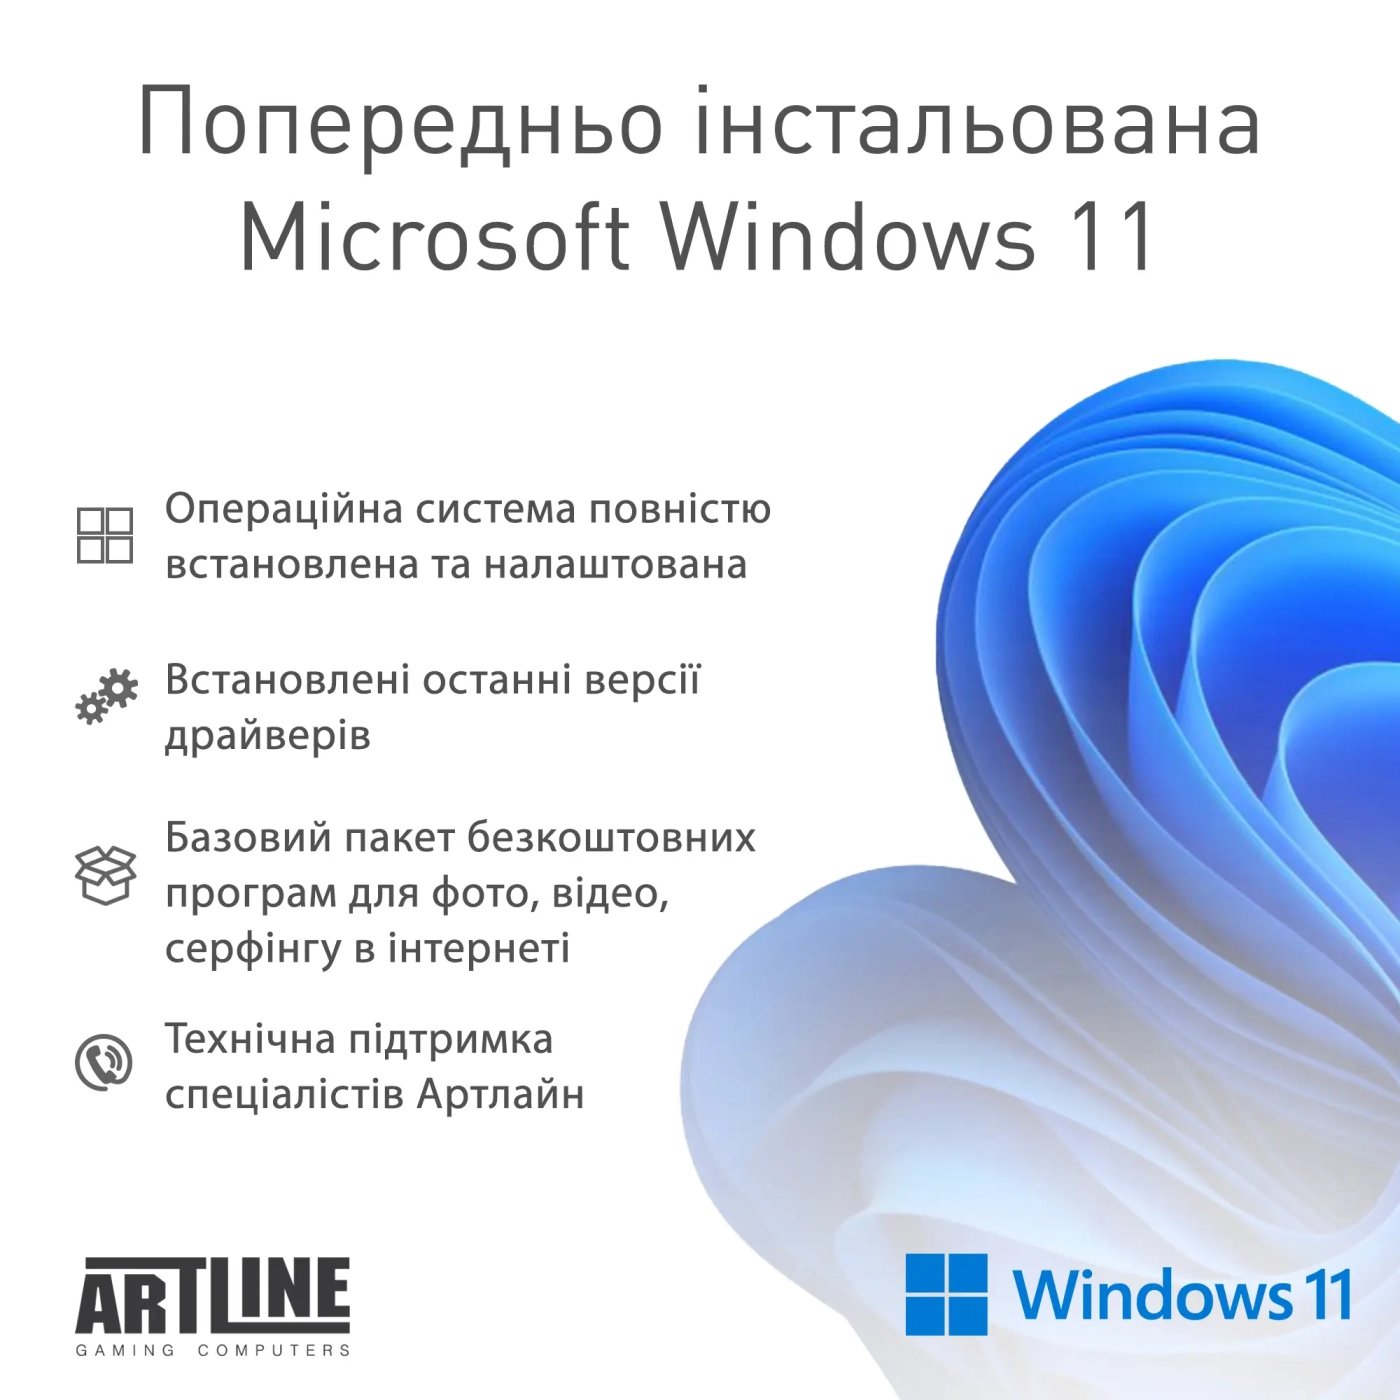 Купить Компьютер ARTLINE Gaming D31 Windows 11 Home (D31v08Win) - фото 11